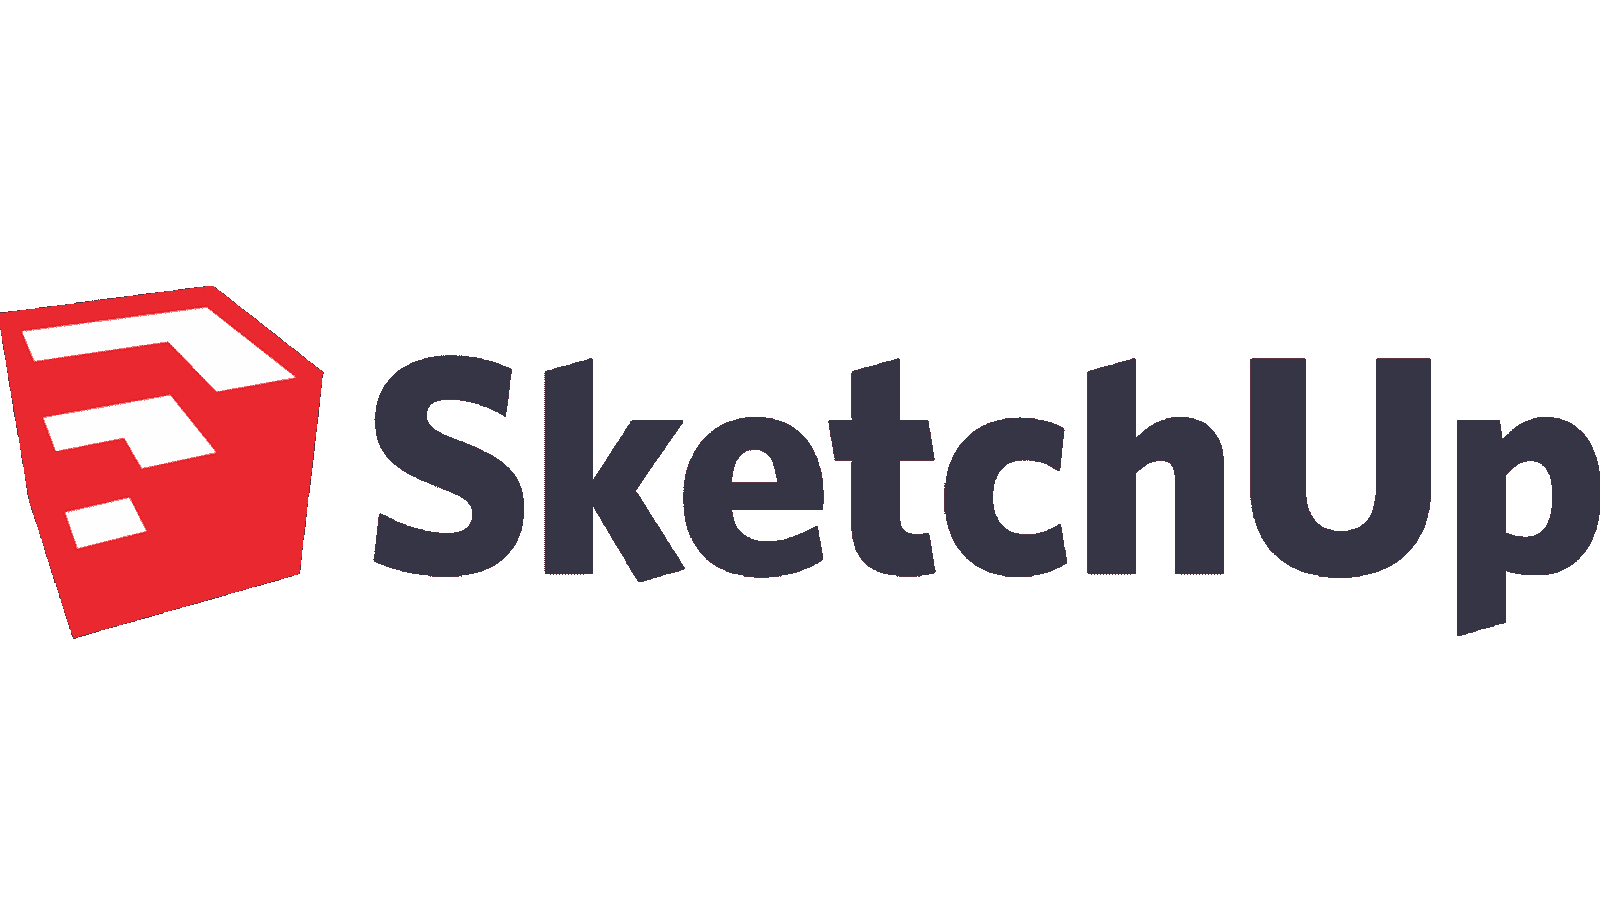 SketchUp-Logo